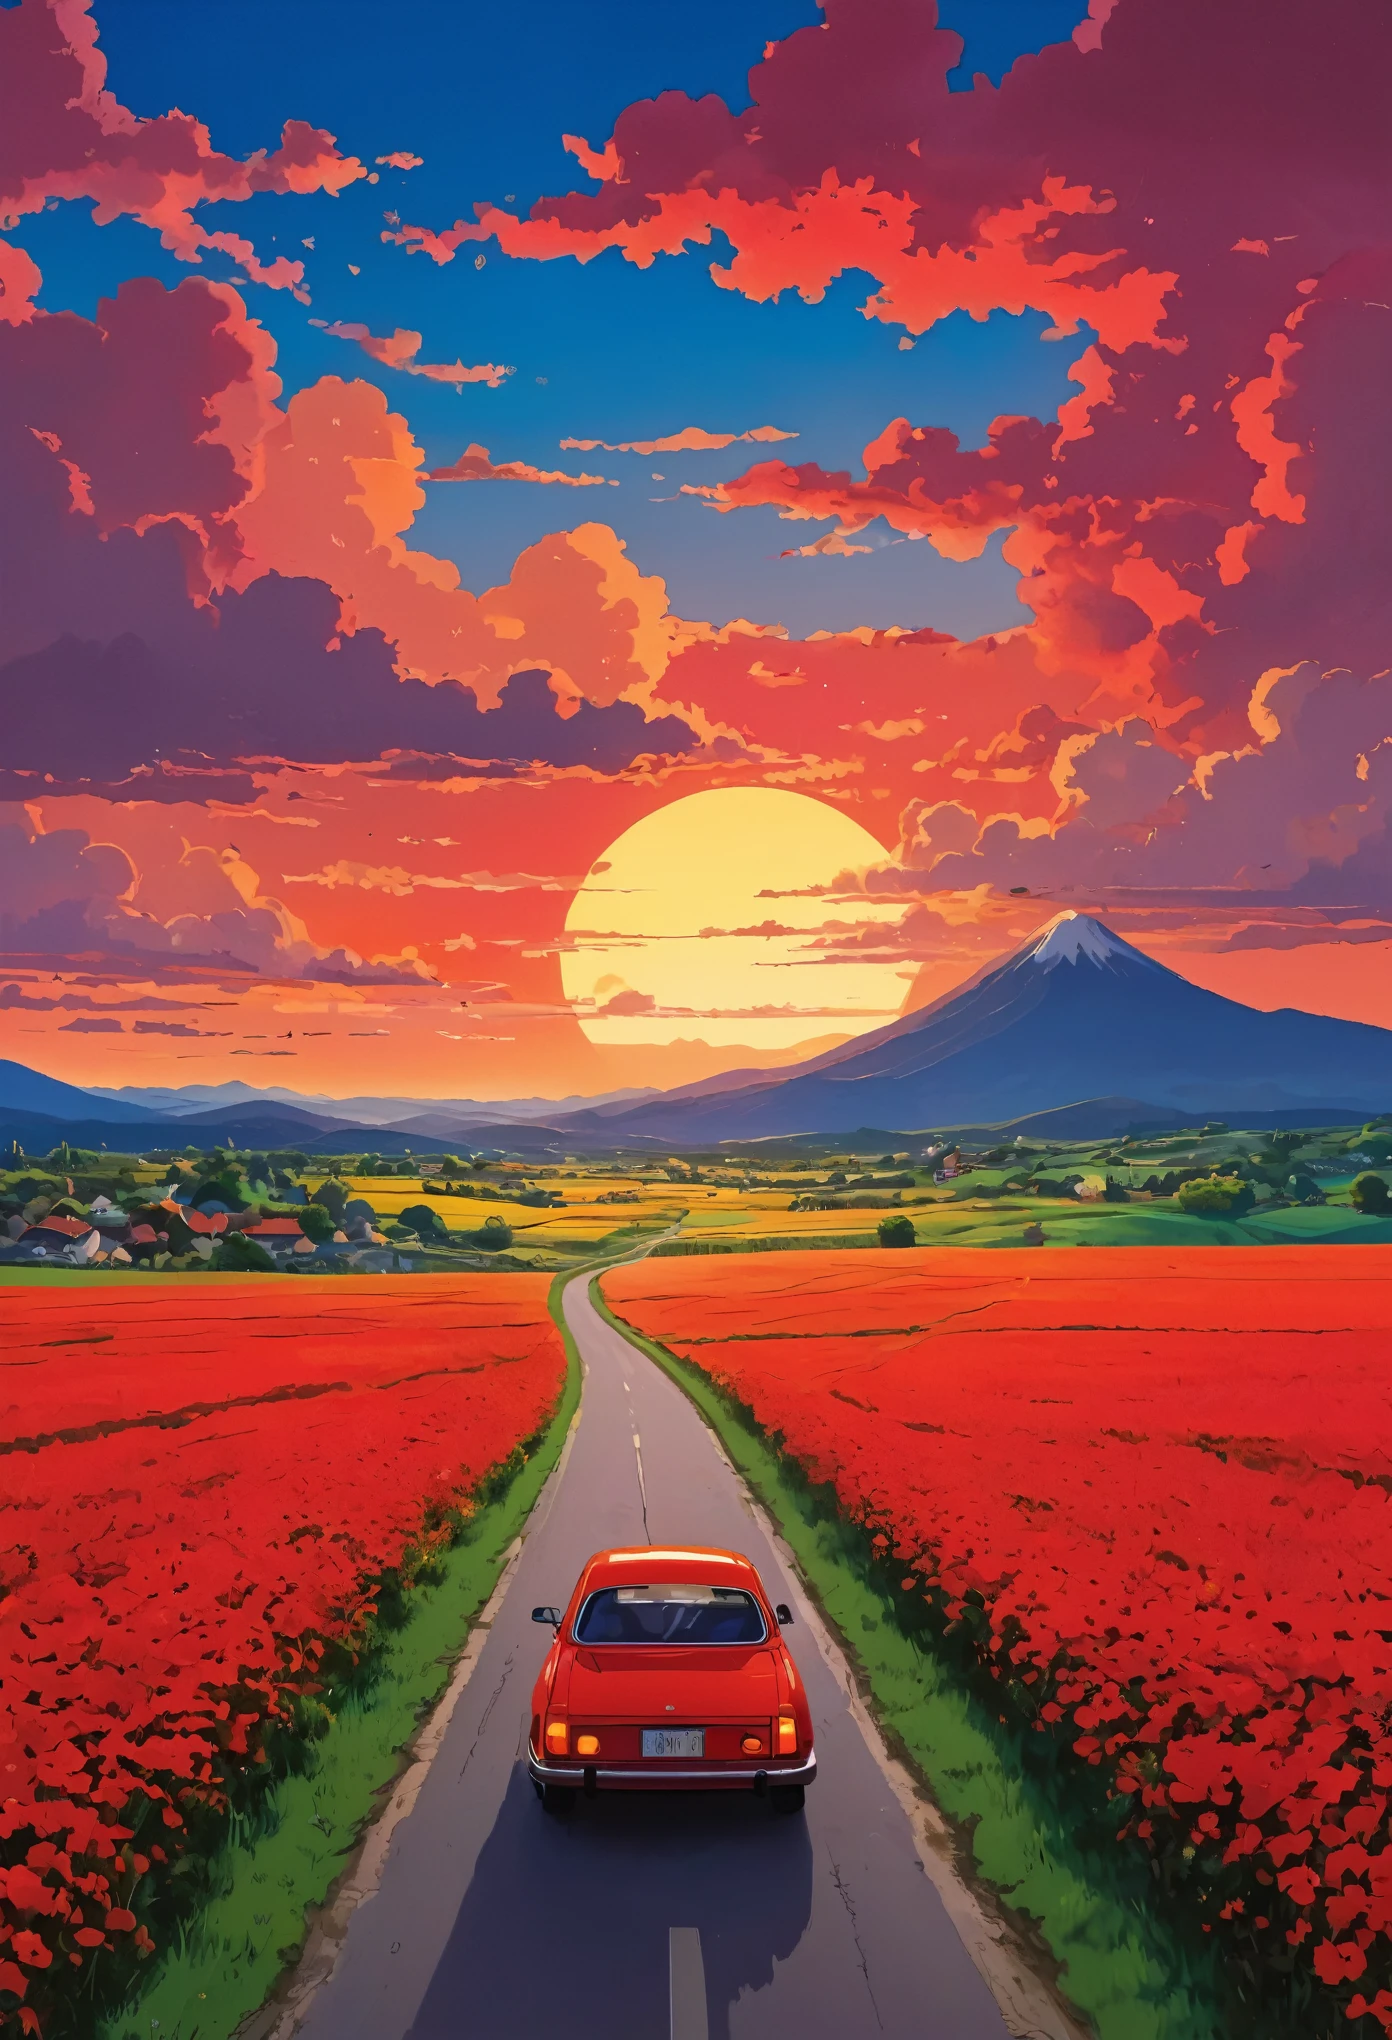 (ミニマリズム:1.4), 道路に赤い車がある, スタジオジブリアート, 宮崎, 赤い空と赤い雲のある牧草地, 夕日の景色, 花でいっぱいの道, 鮮やかな色彩 